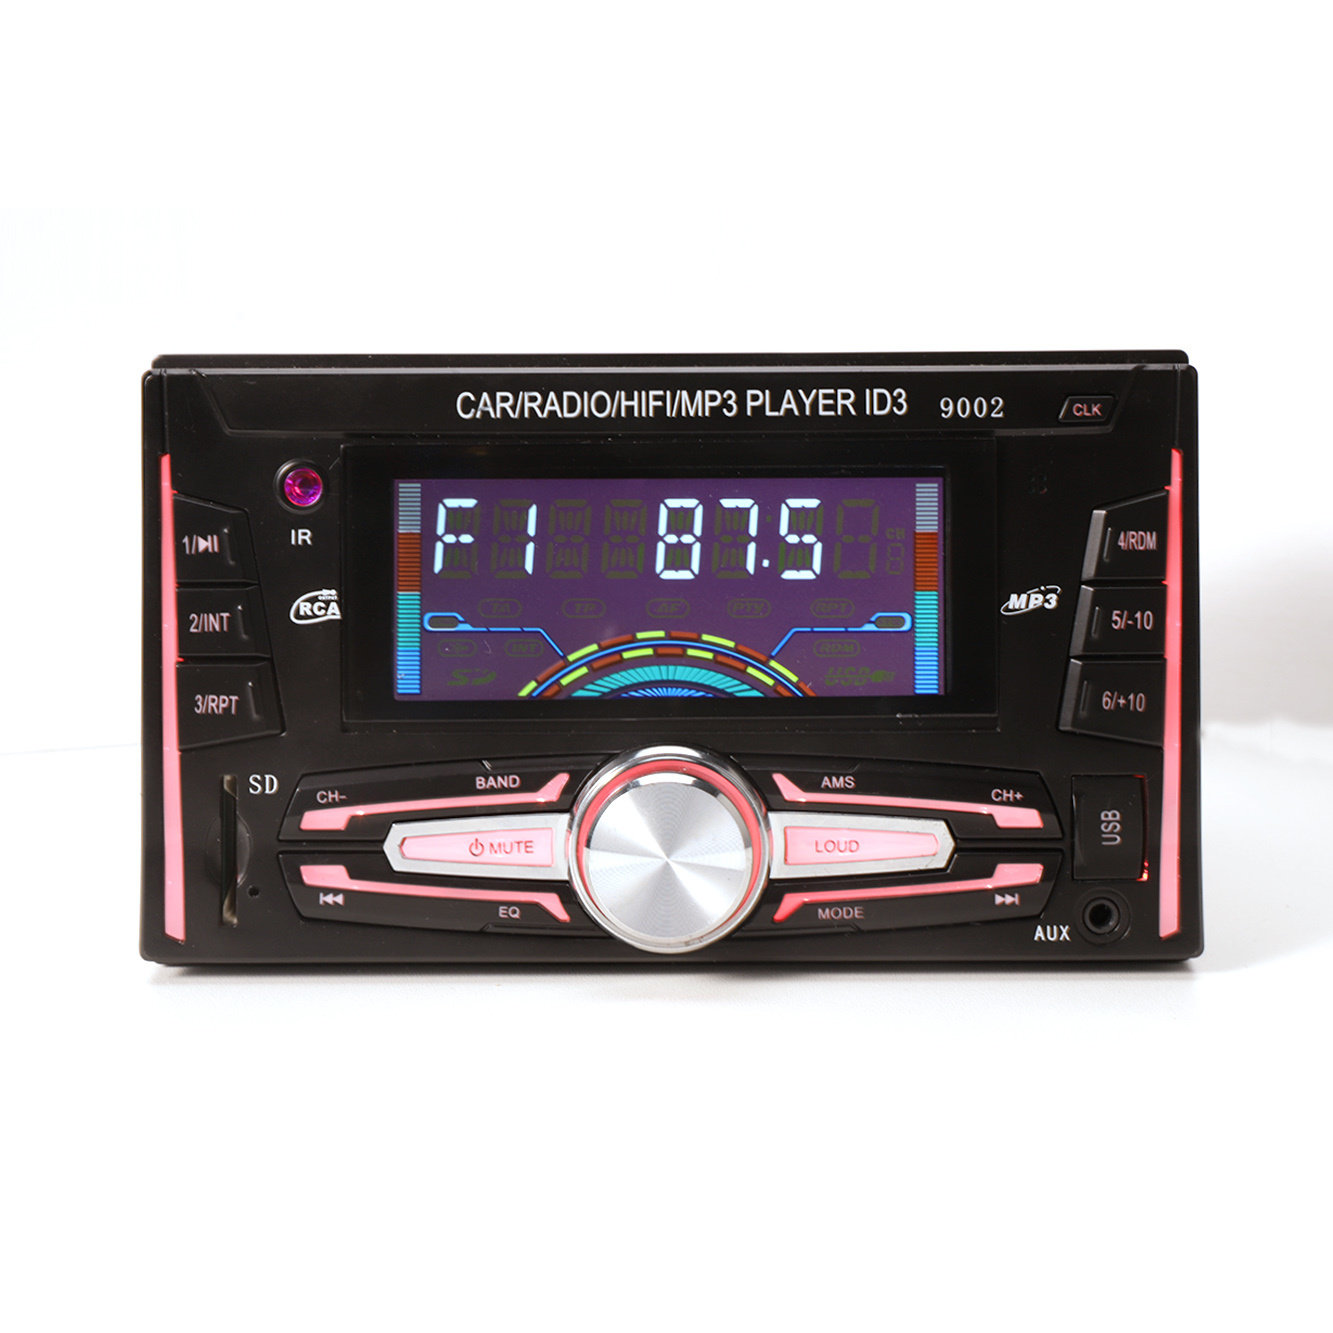 Transmissor FM Áudio Acessórios para carro Painel fixo estéreo para carro MP3 player duplo DIN